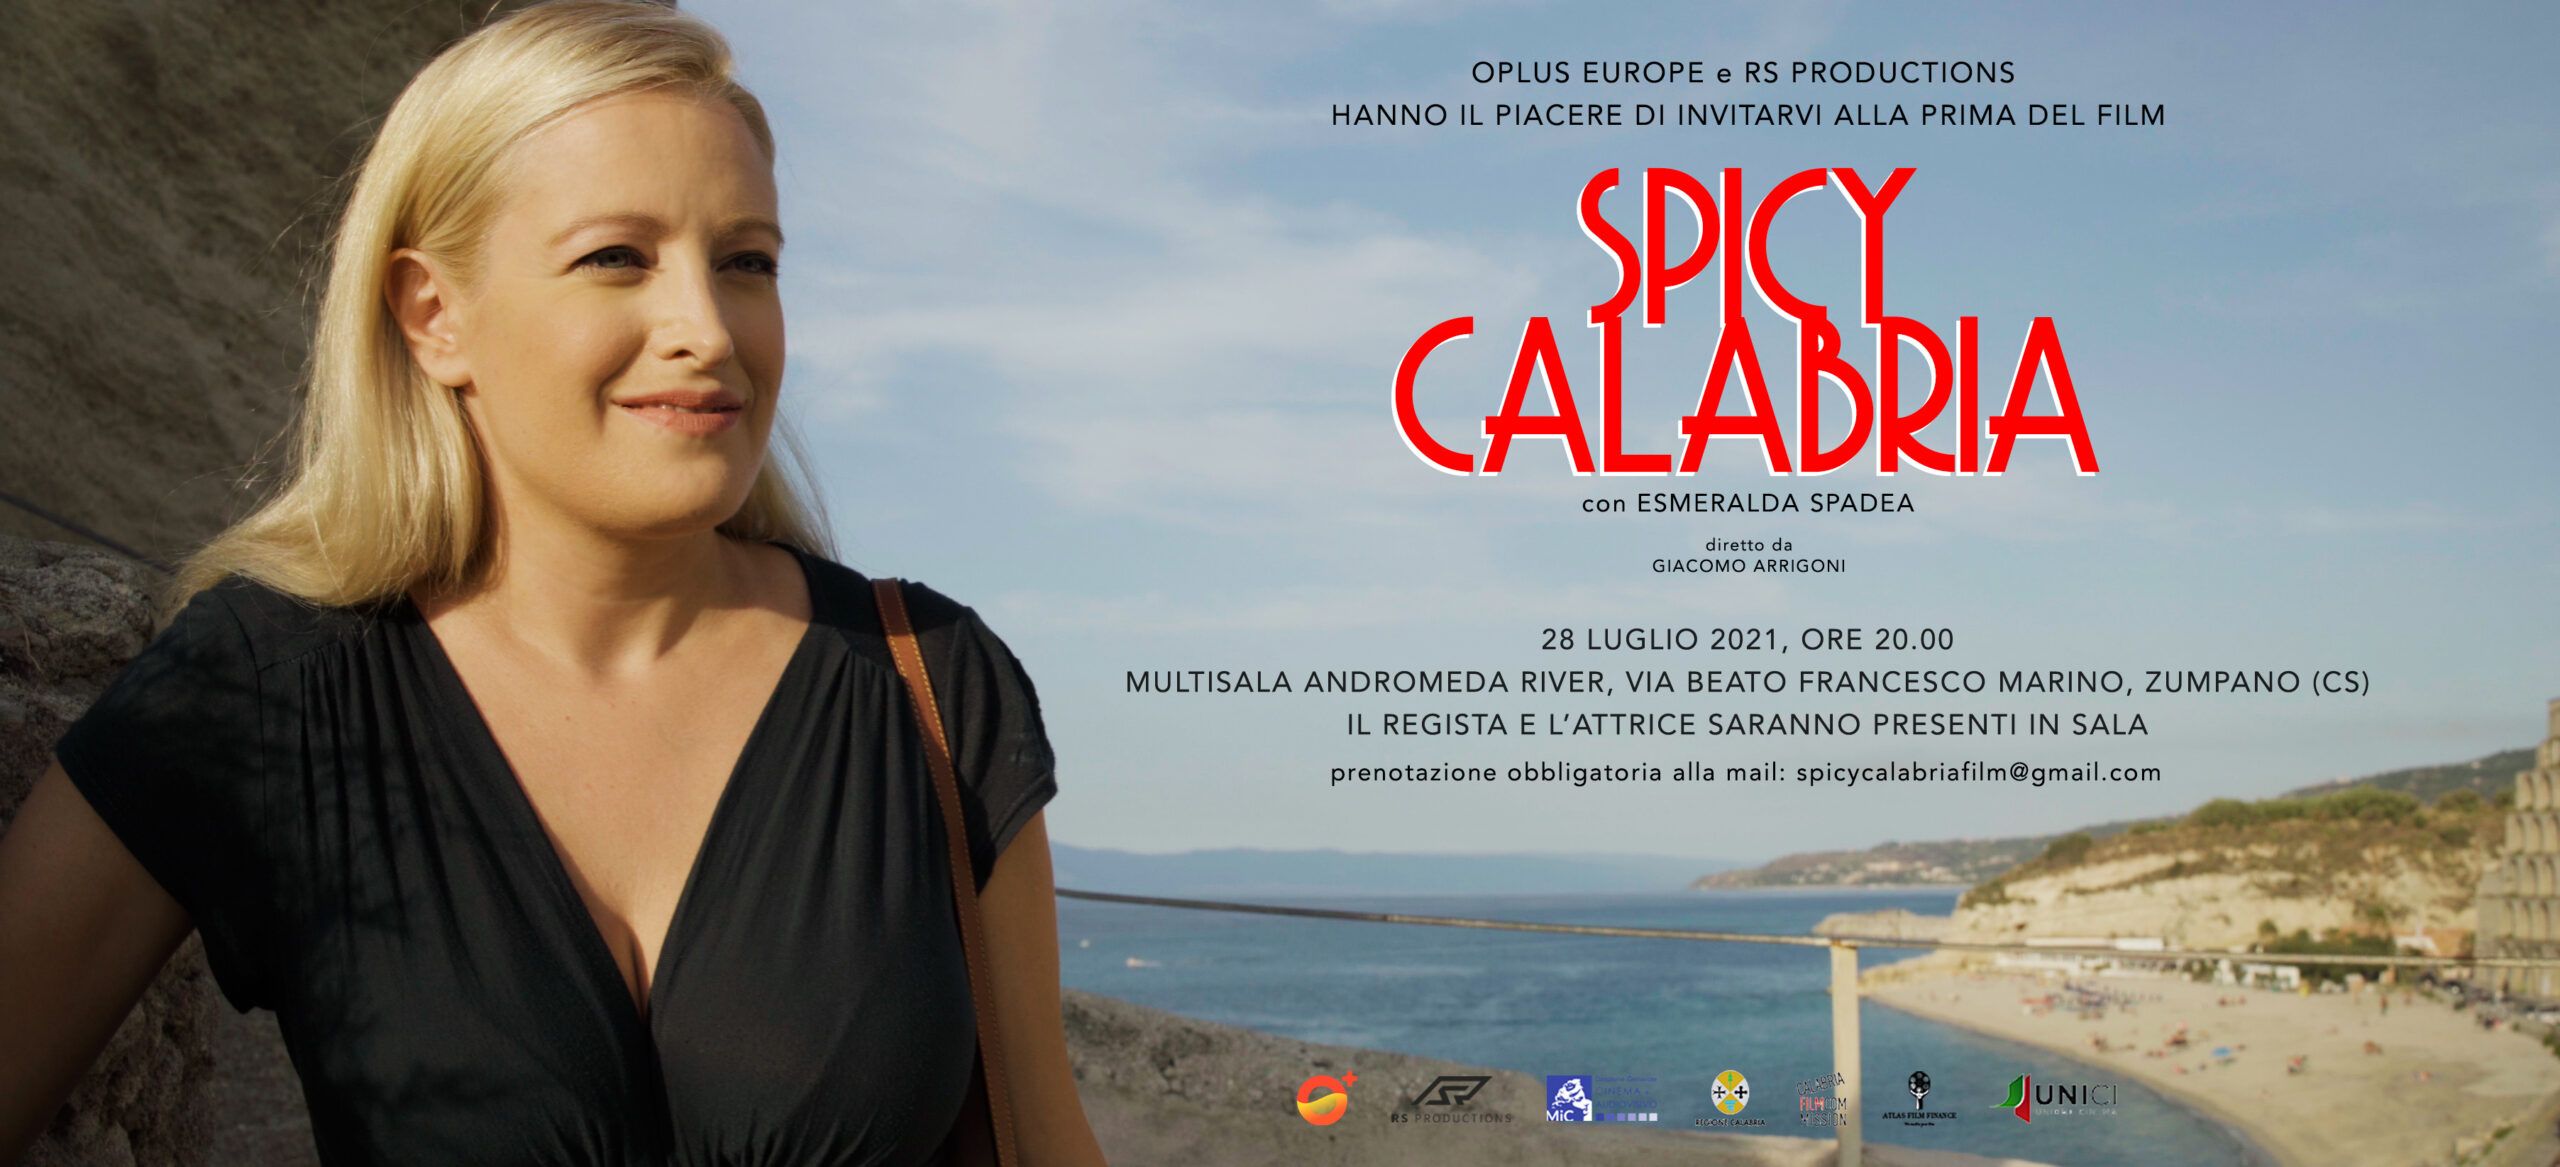 Al cinema l’atteso “Spicy Calabria”, un viaggio alla scoperta della regione